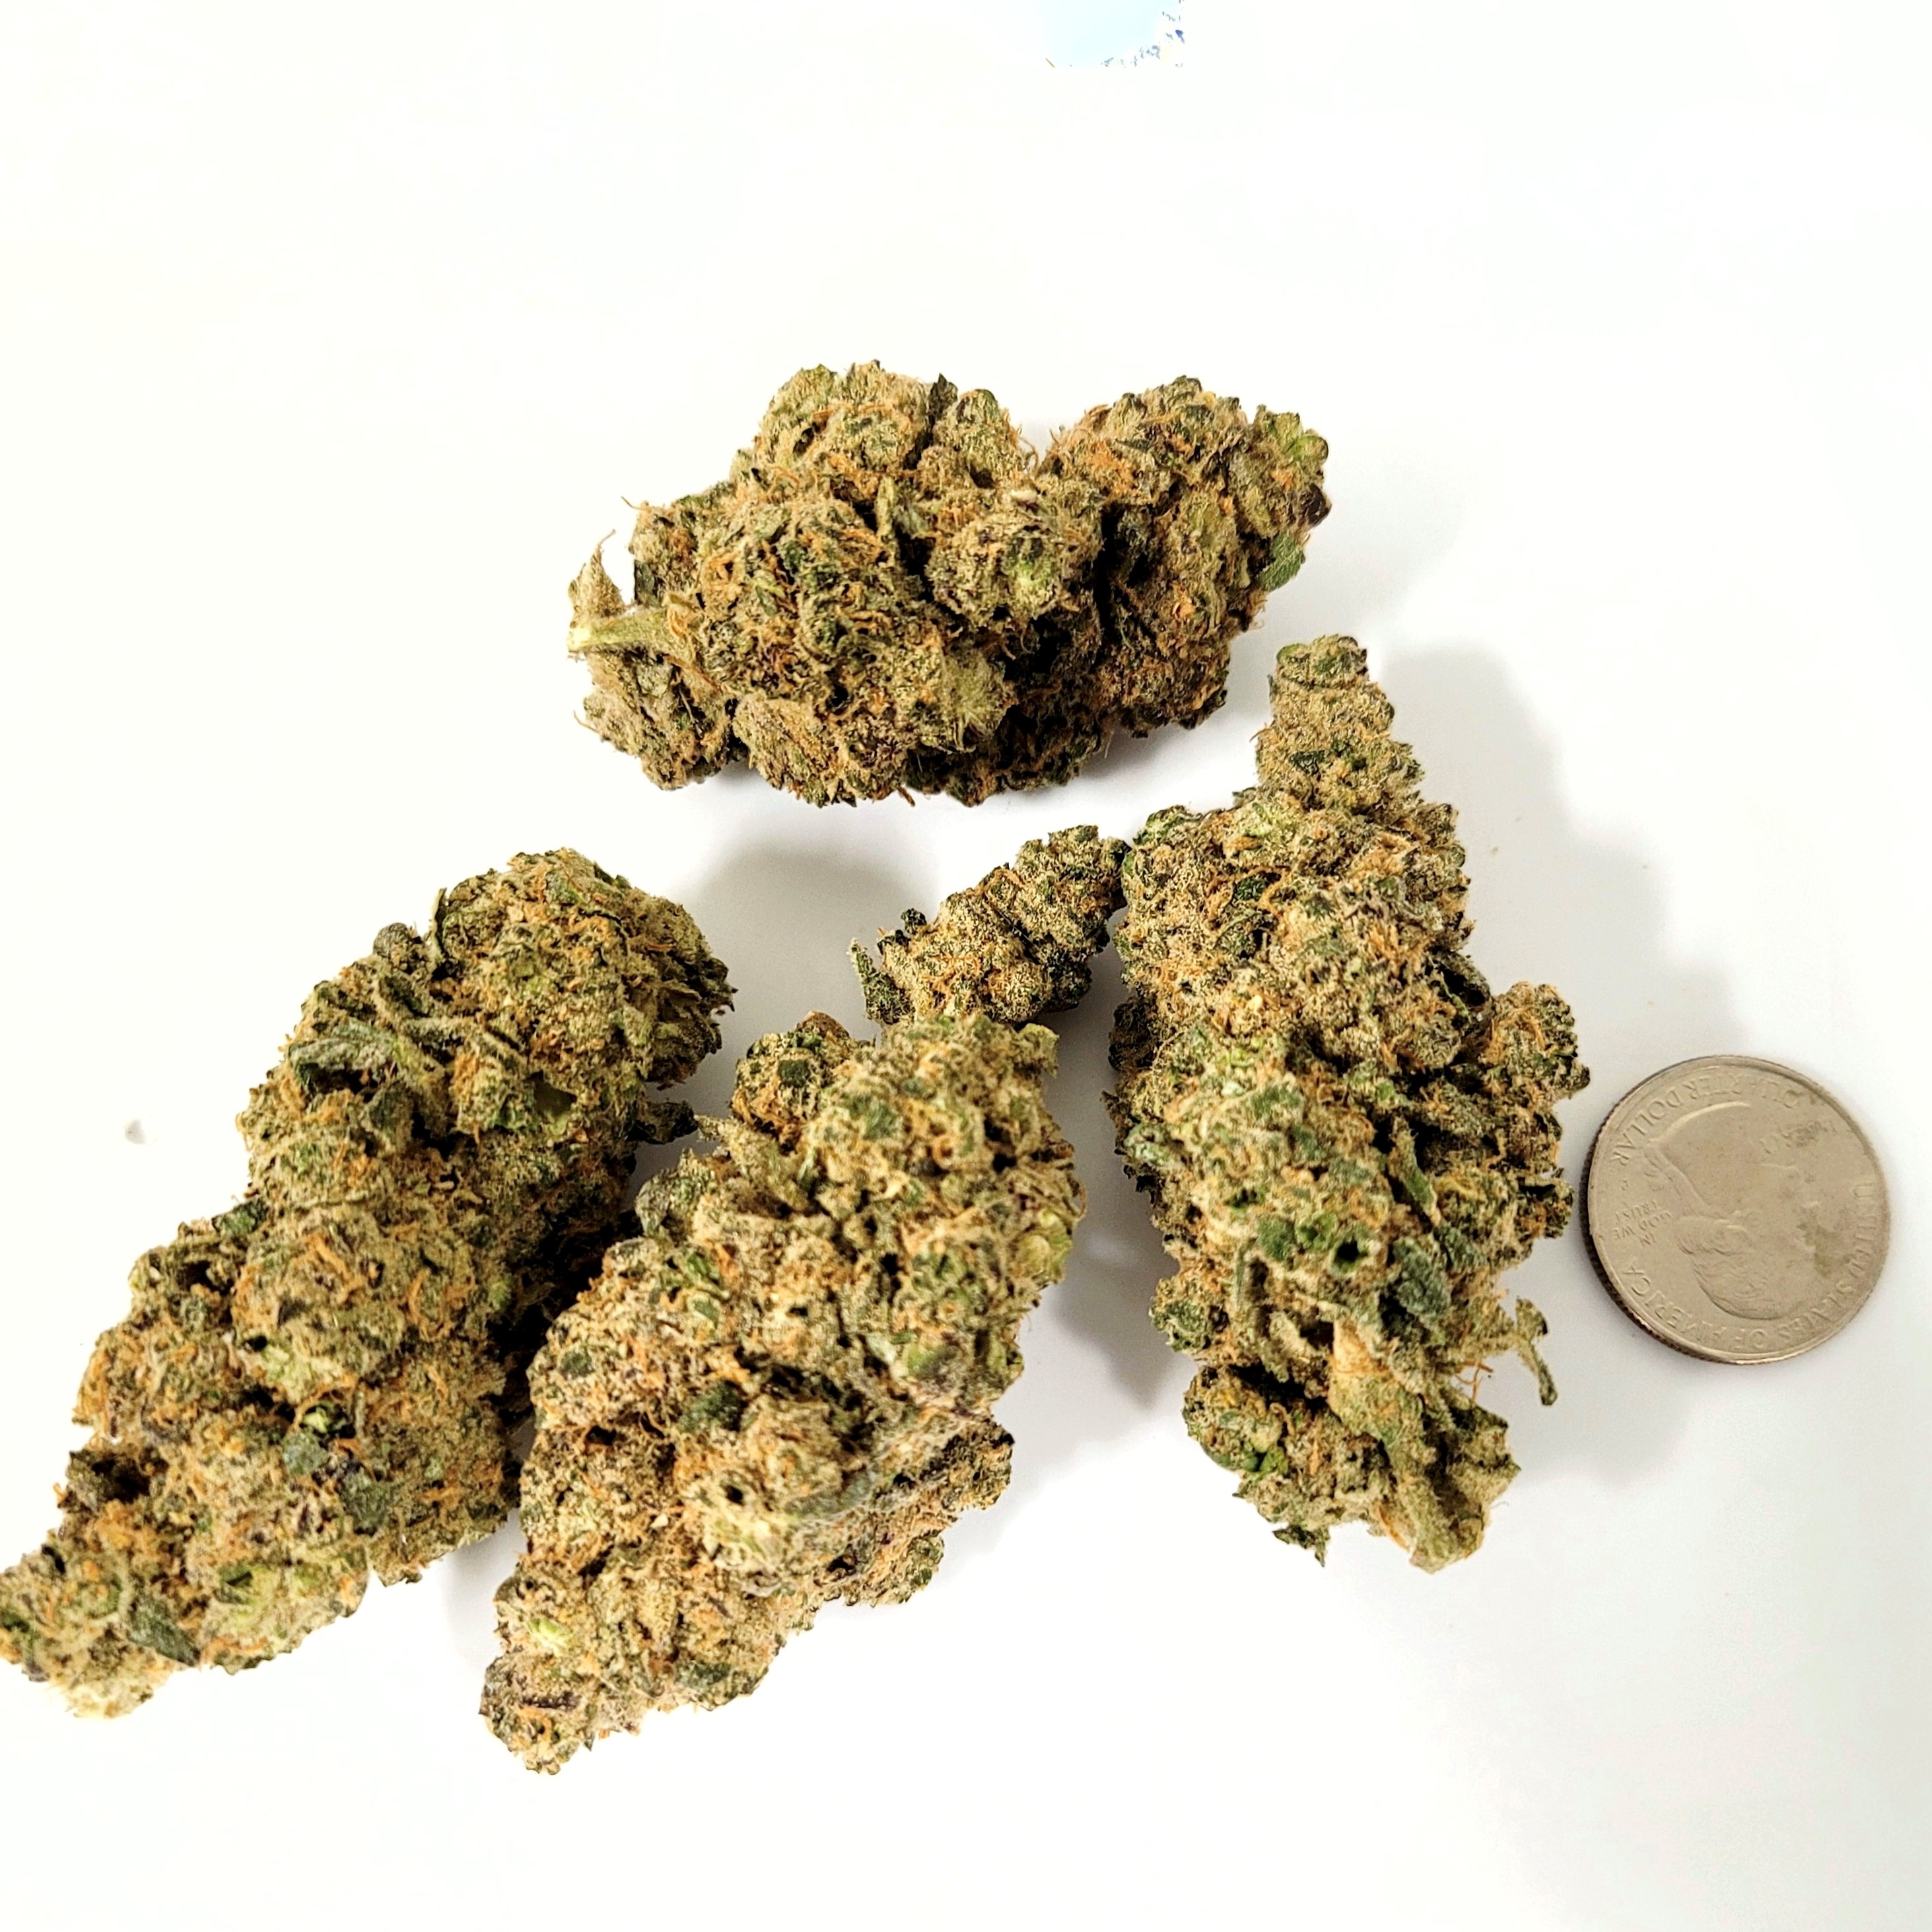 a half an ounce of cannabis